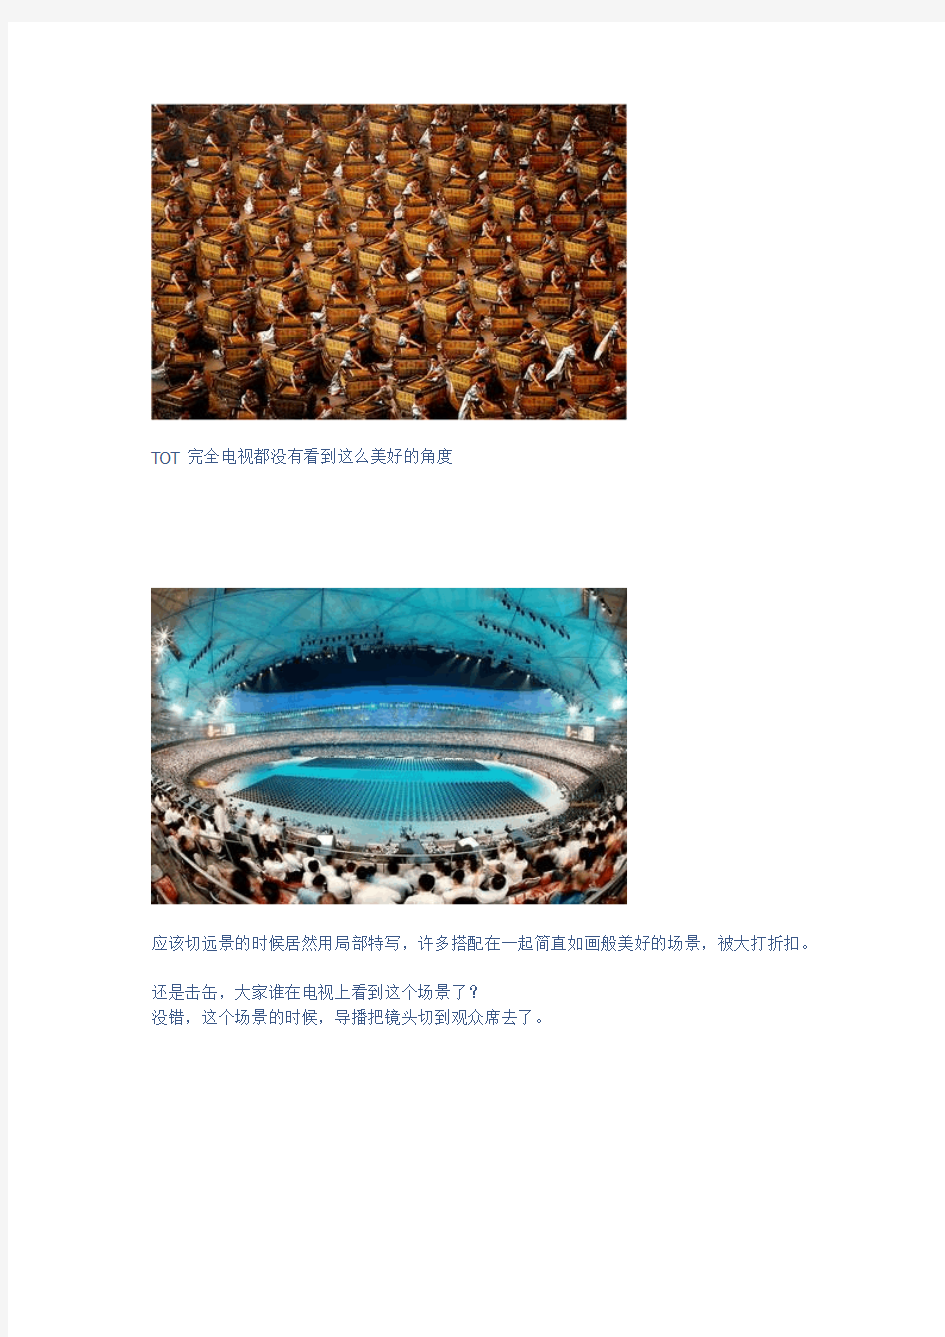 2008年北京奥运开幕式图片(震撼)